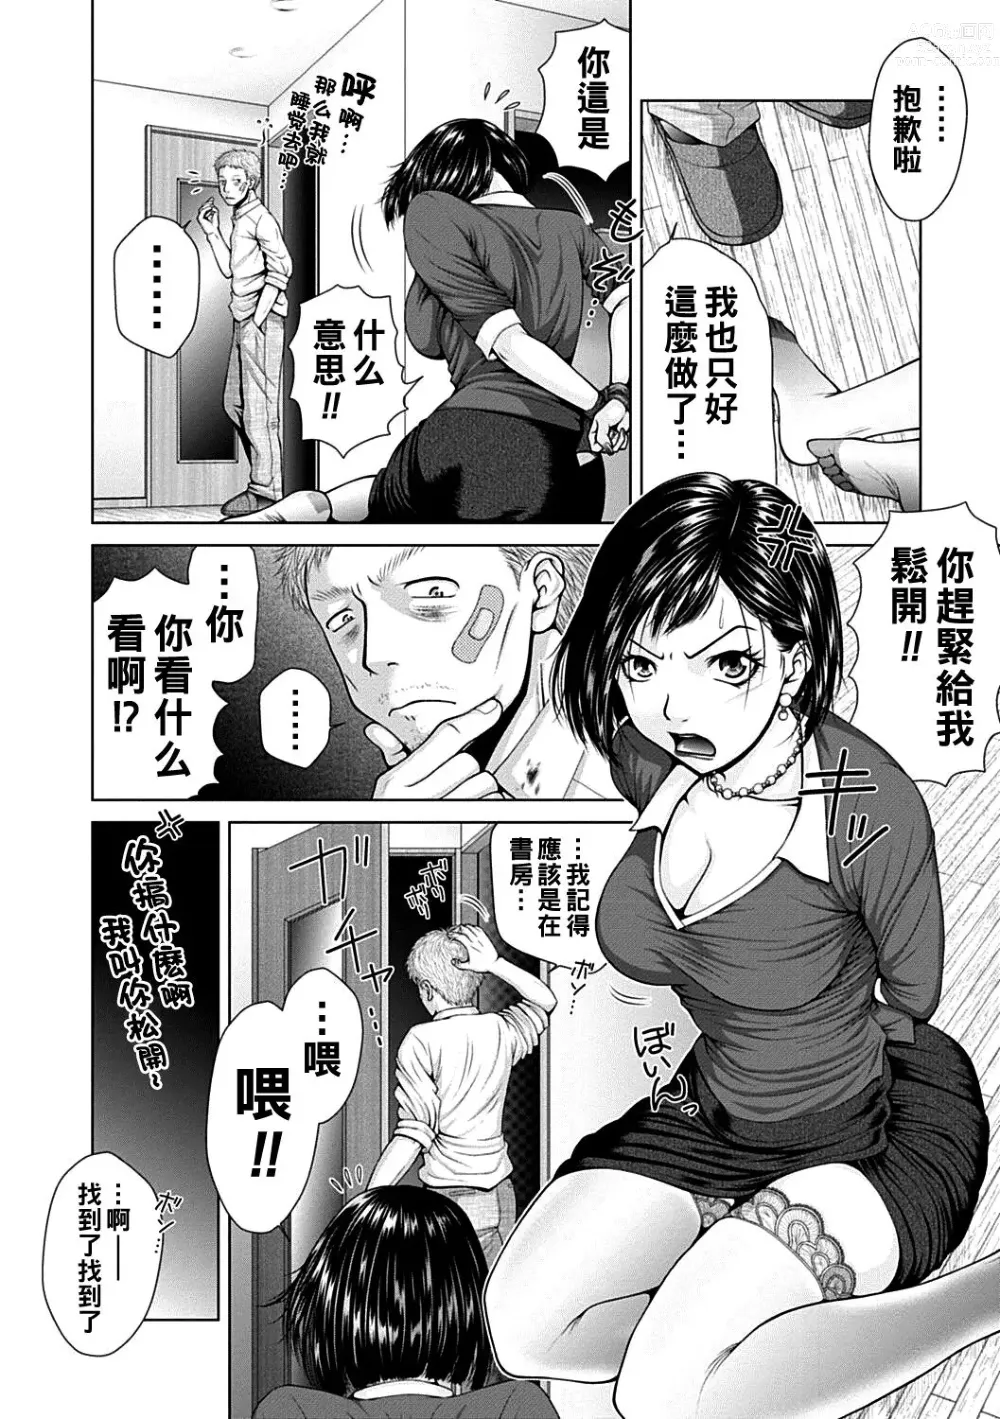 Page 6 of manga Salaryman  Elegy